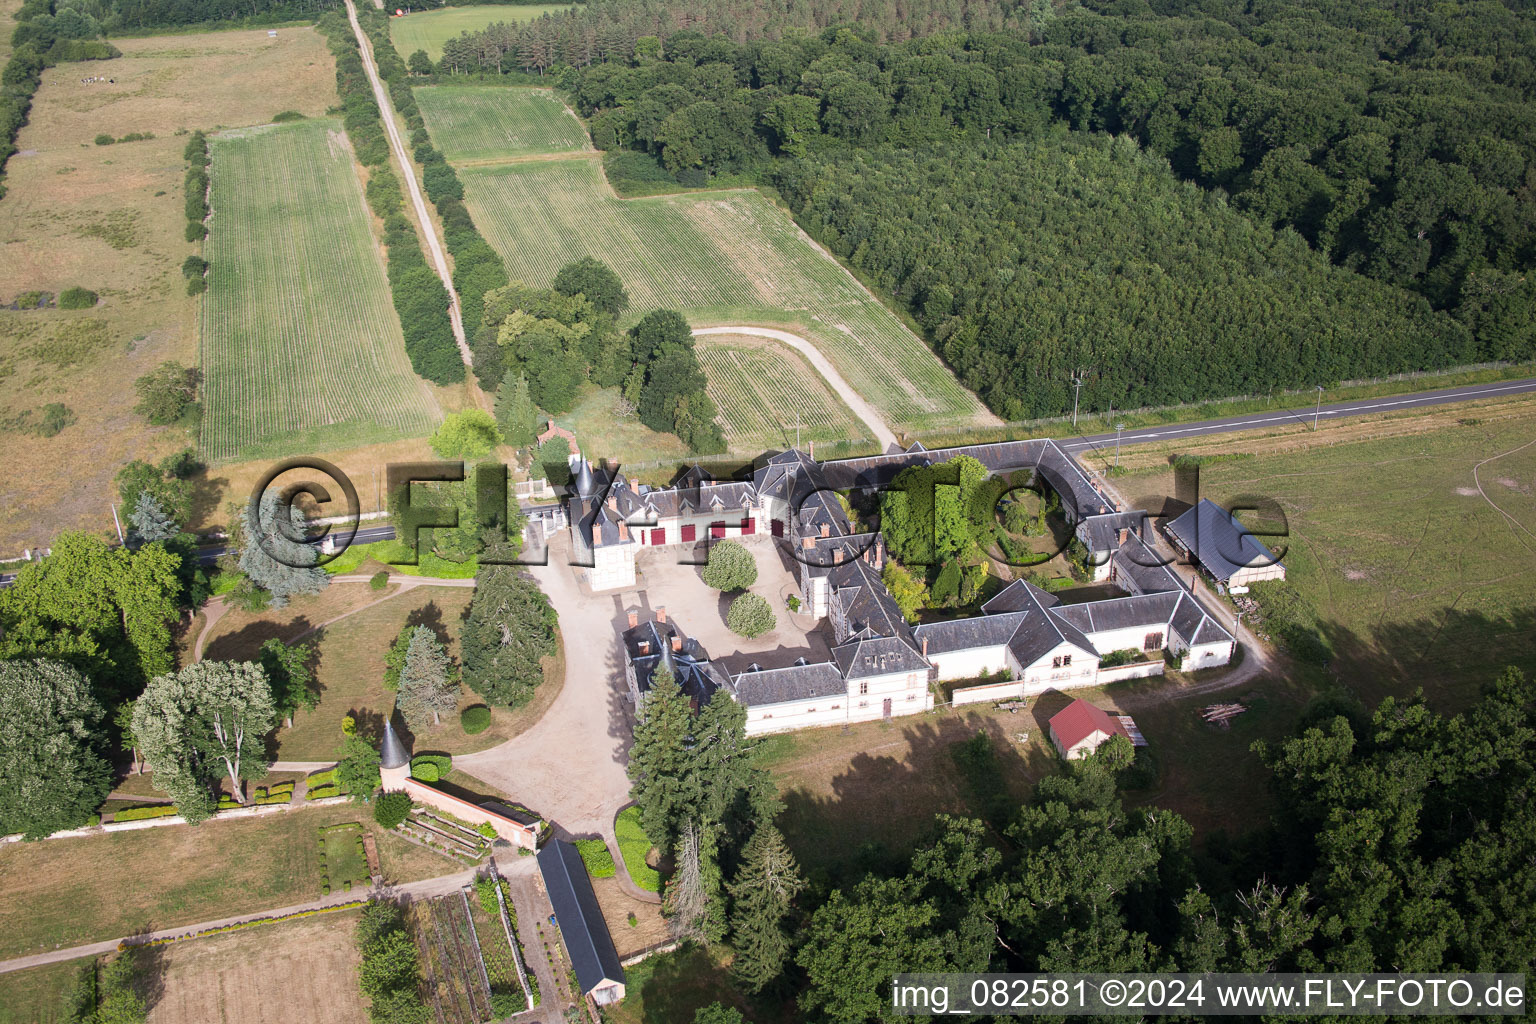 Château de Combreux à Combreux dans le département Loiret, France depuis l'avion